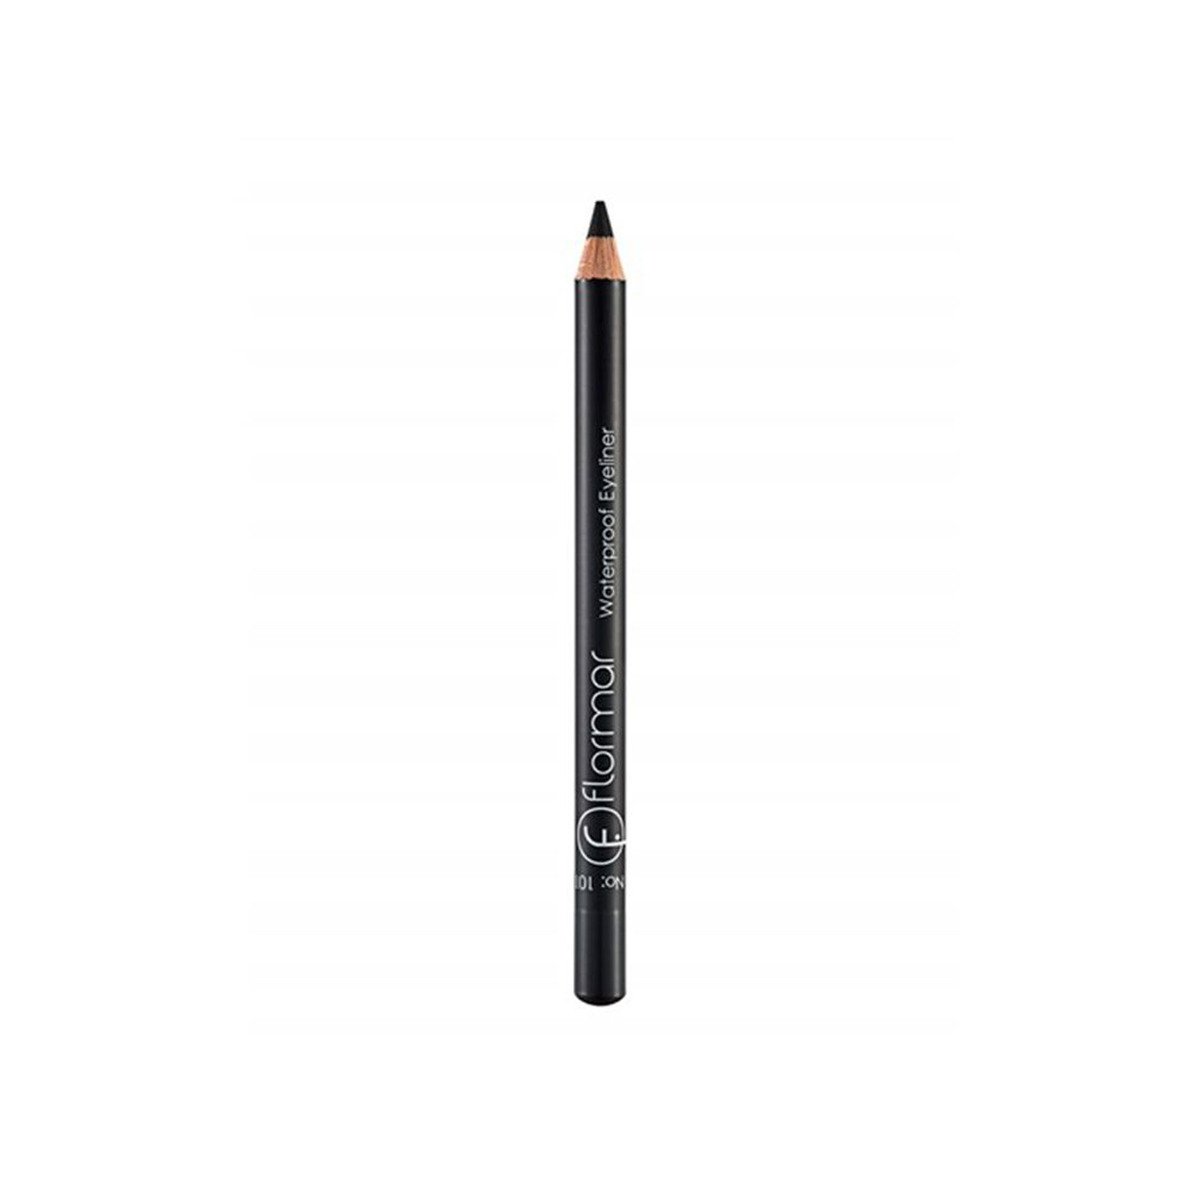 Flormar Waterproof Eyeliner Pencil - 101 Black Ice 1pc